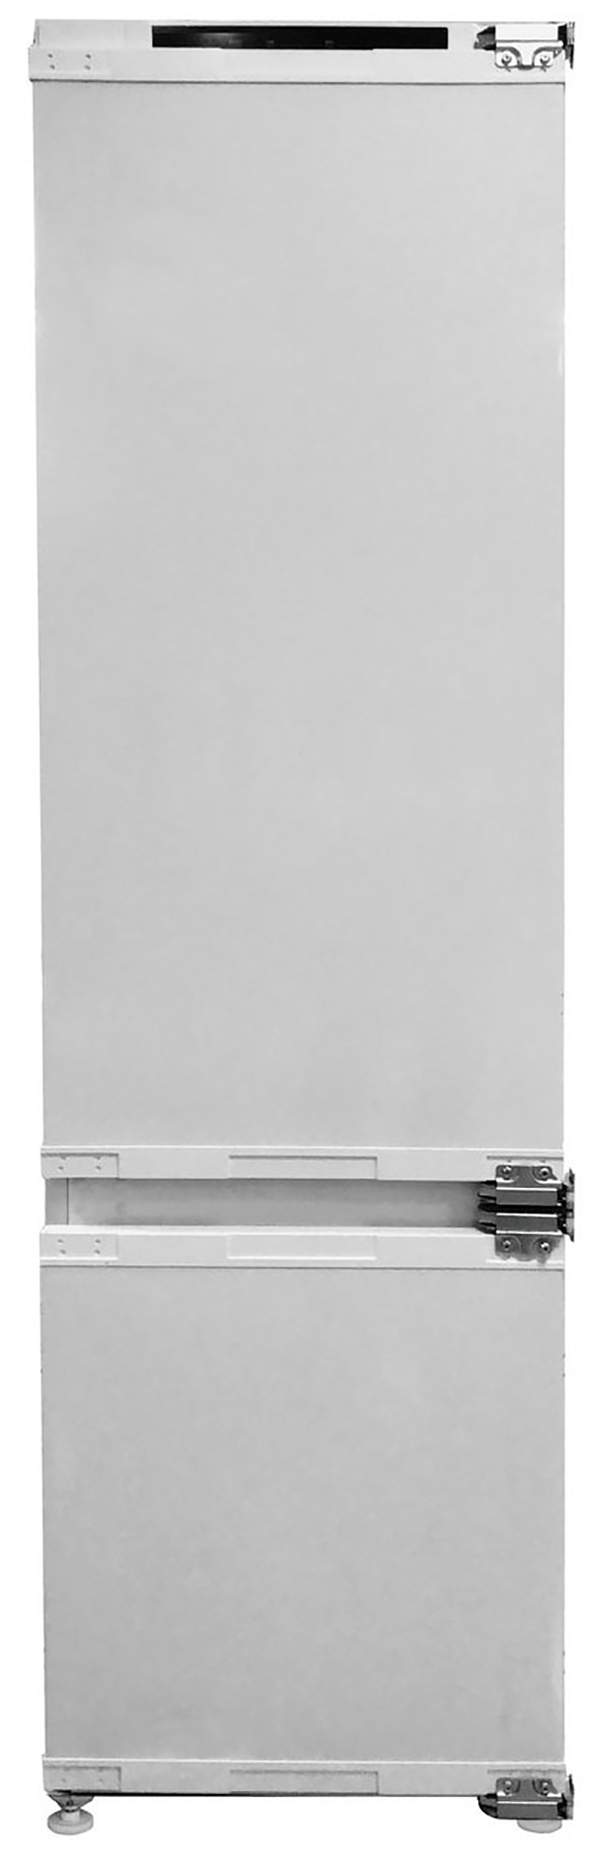 Встраиваемый холодильник Haier HBW5518ERU белый - отзывы покупателей на маркетплейсе Мегамаркет | Артикул: 600010924420